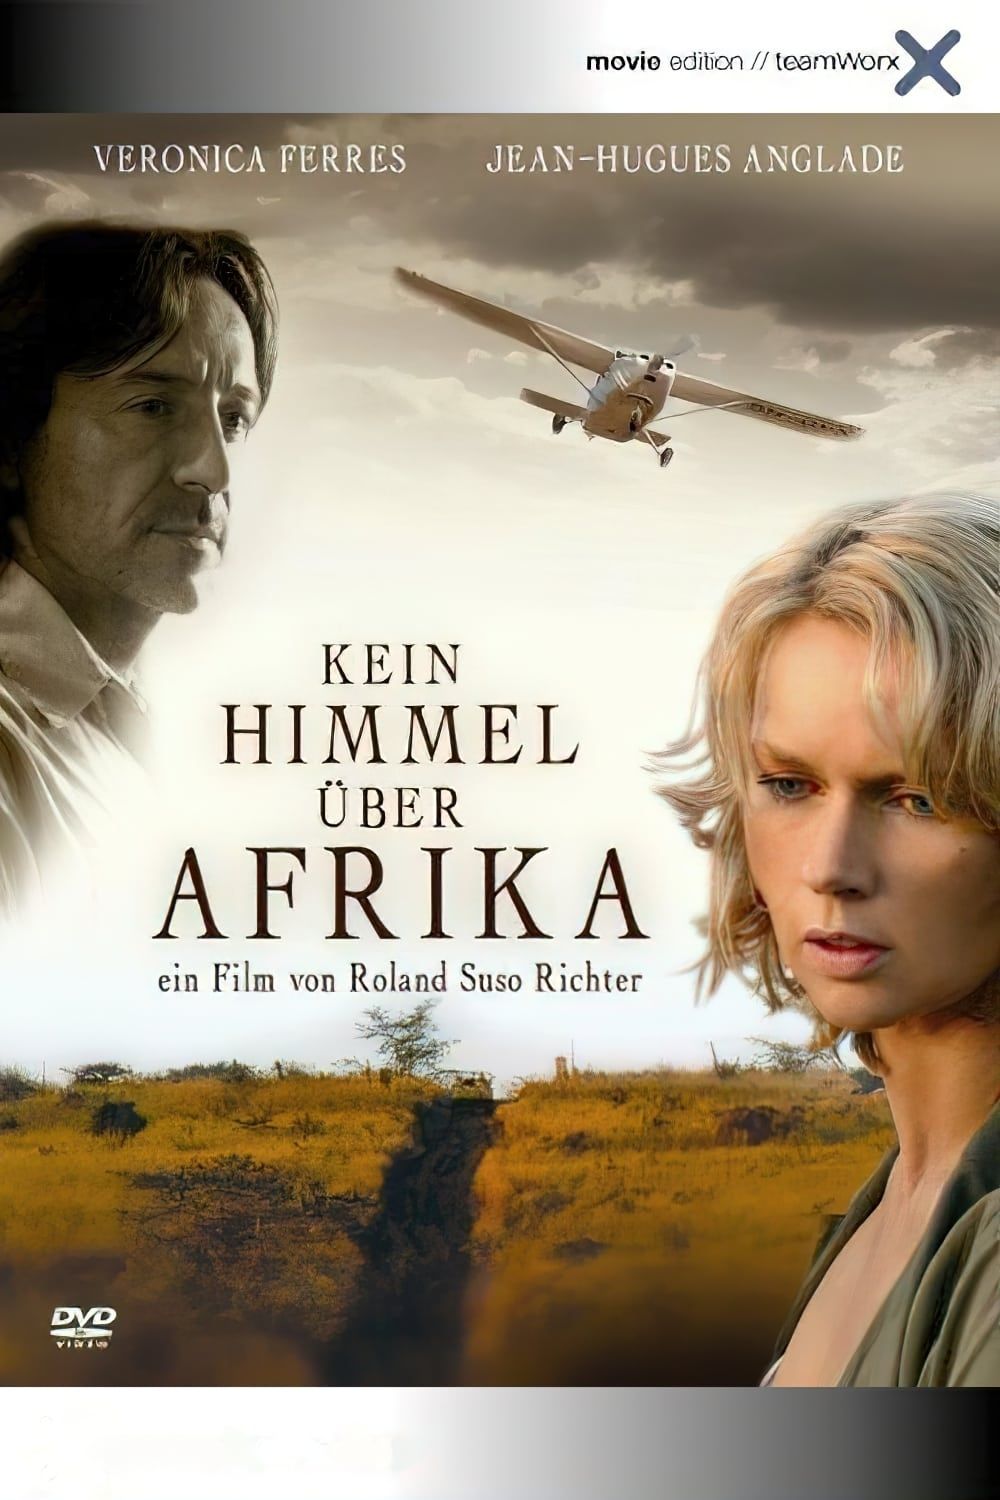 Das Wunder Von Berlin (DVD), Karoline Herfurth, DVD